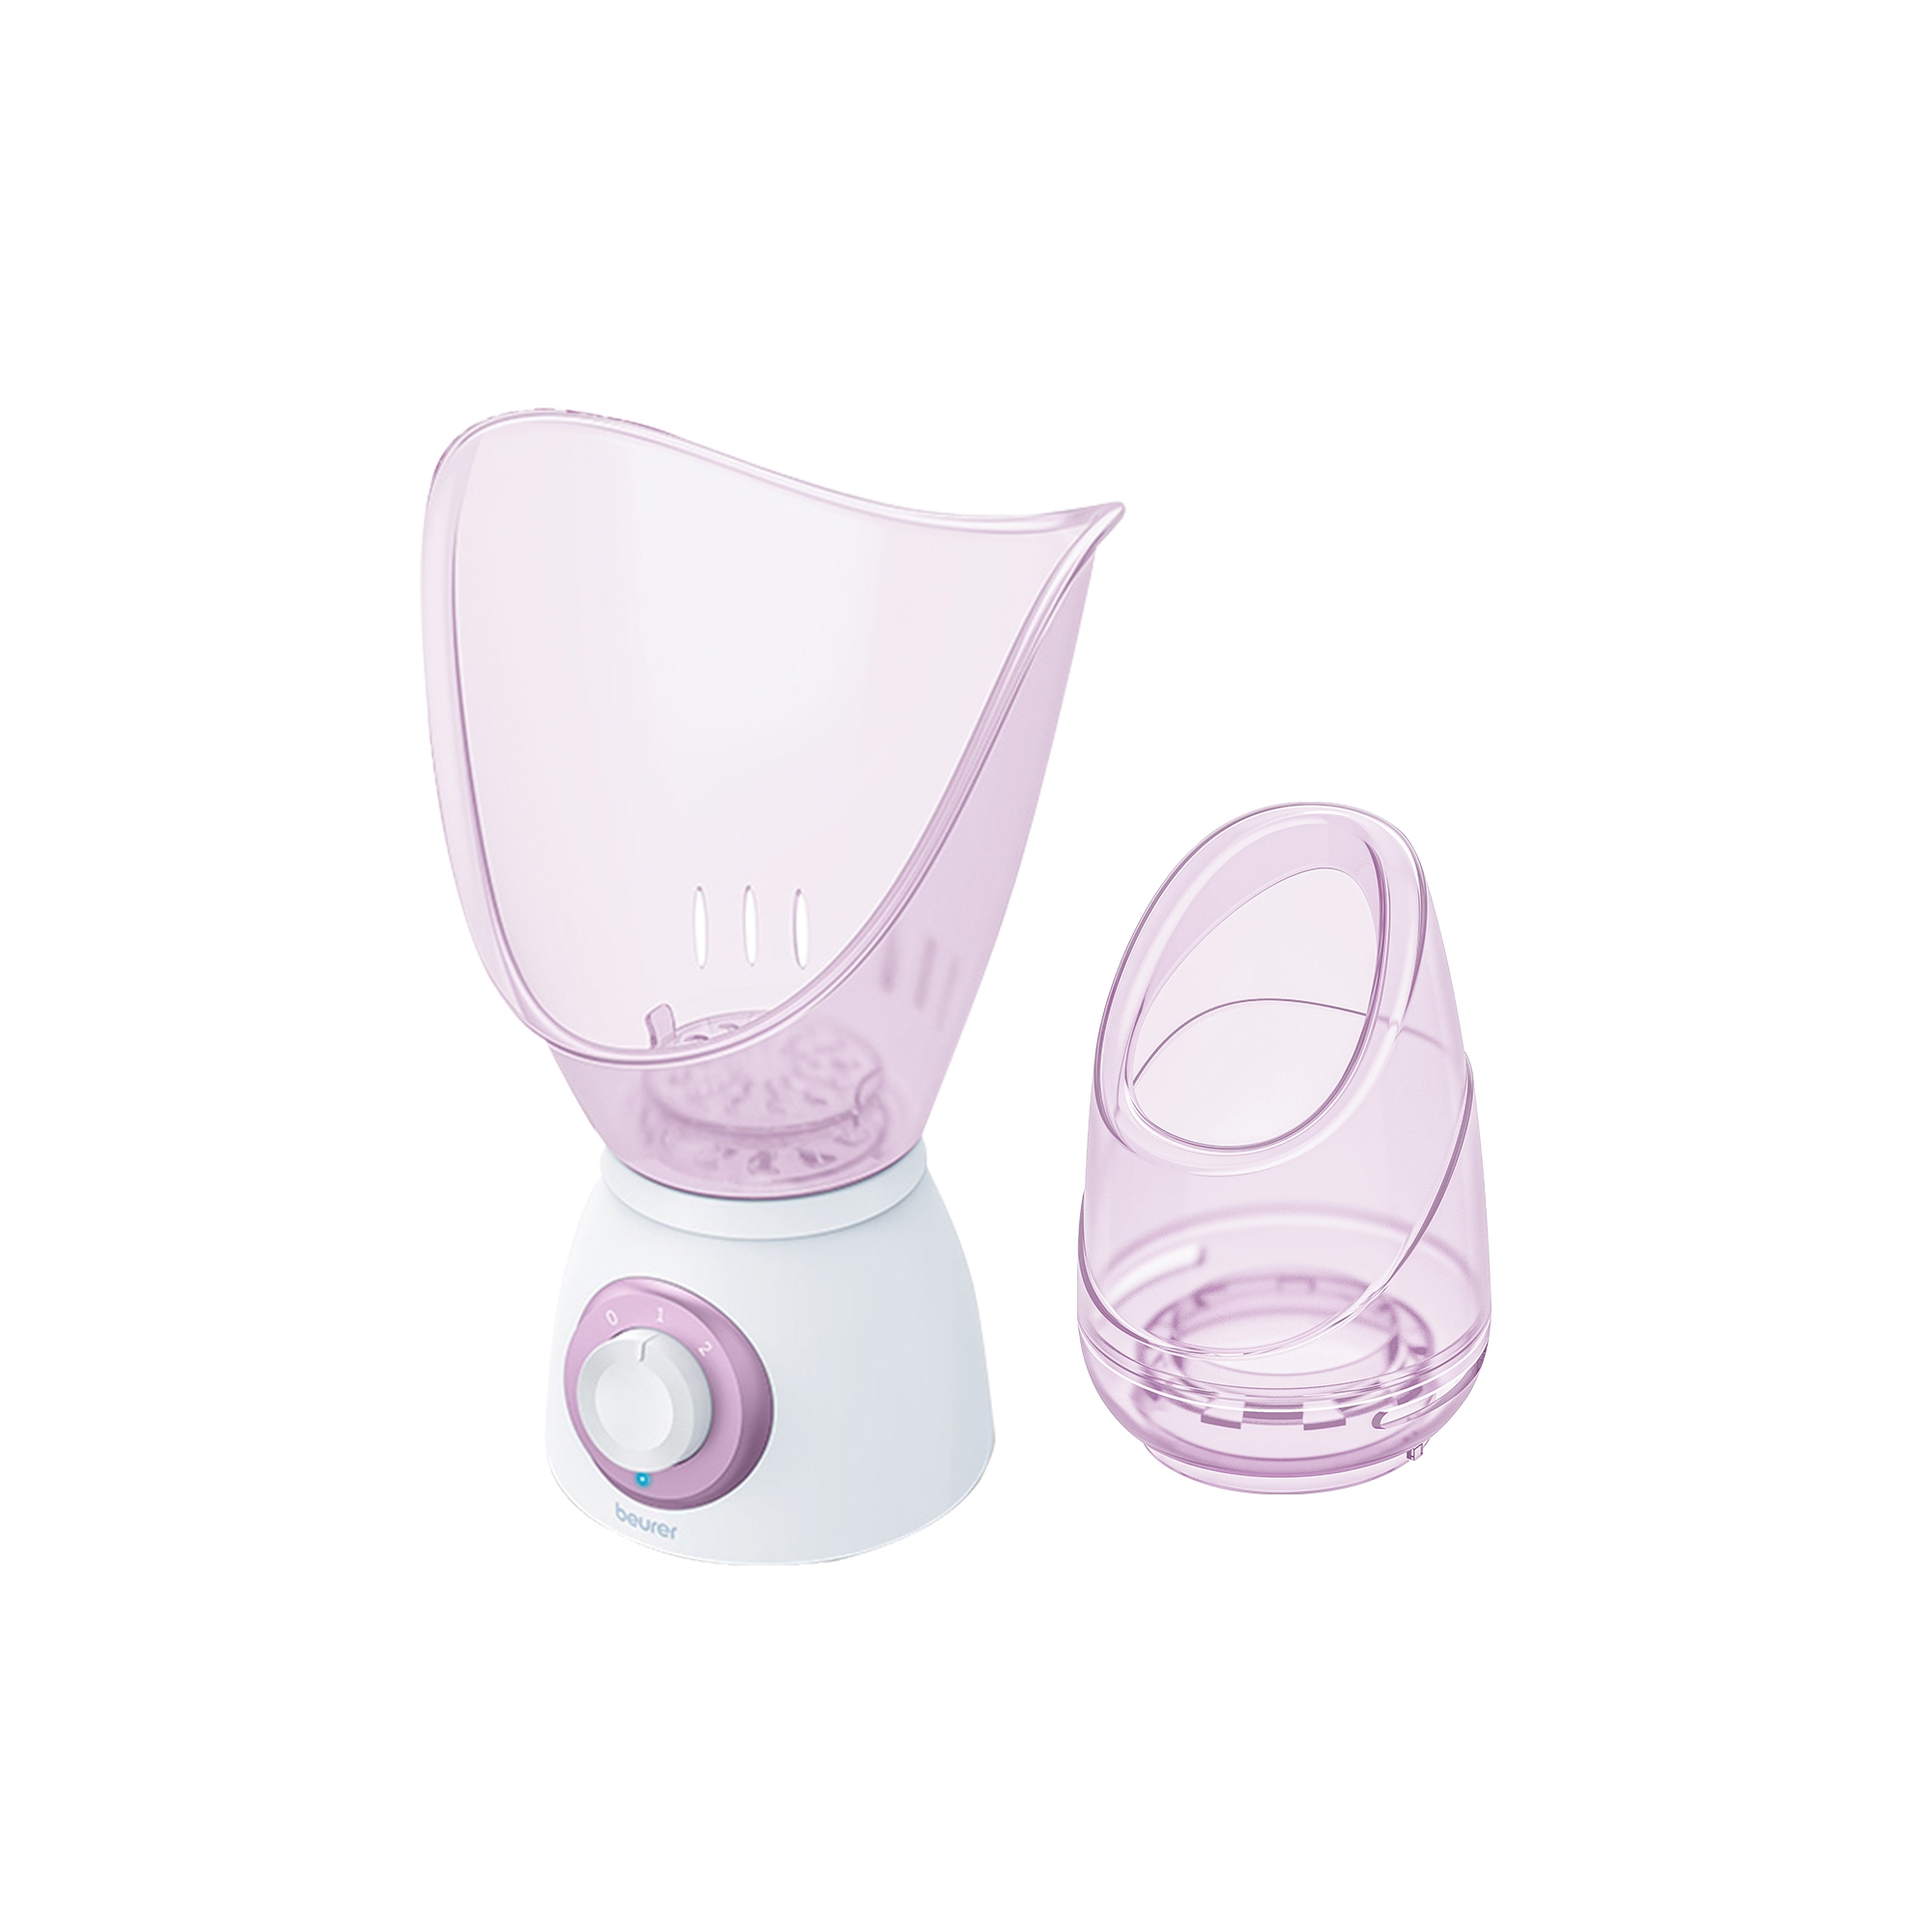 Beurer Facial Sauna and Intensive Inhaler Image 1